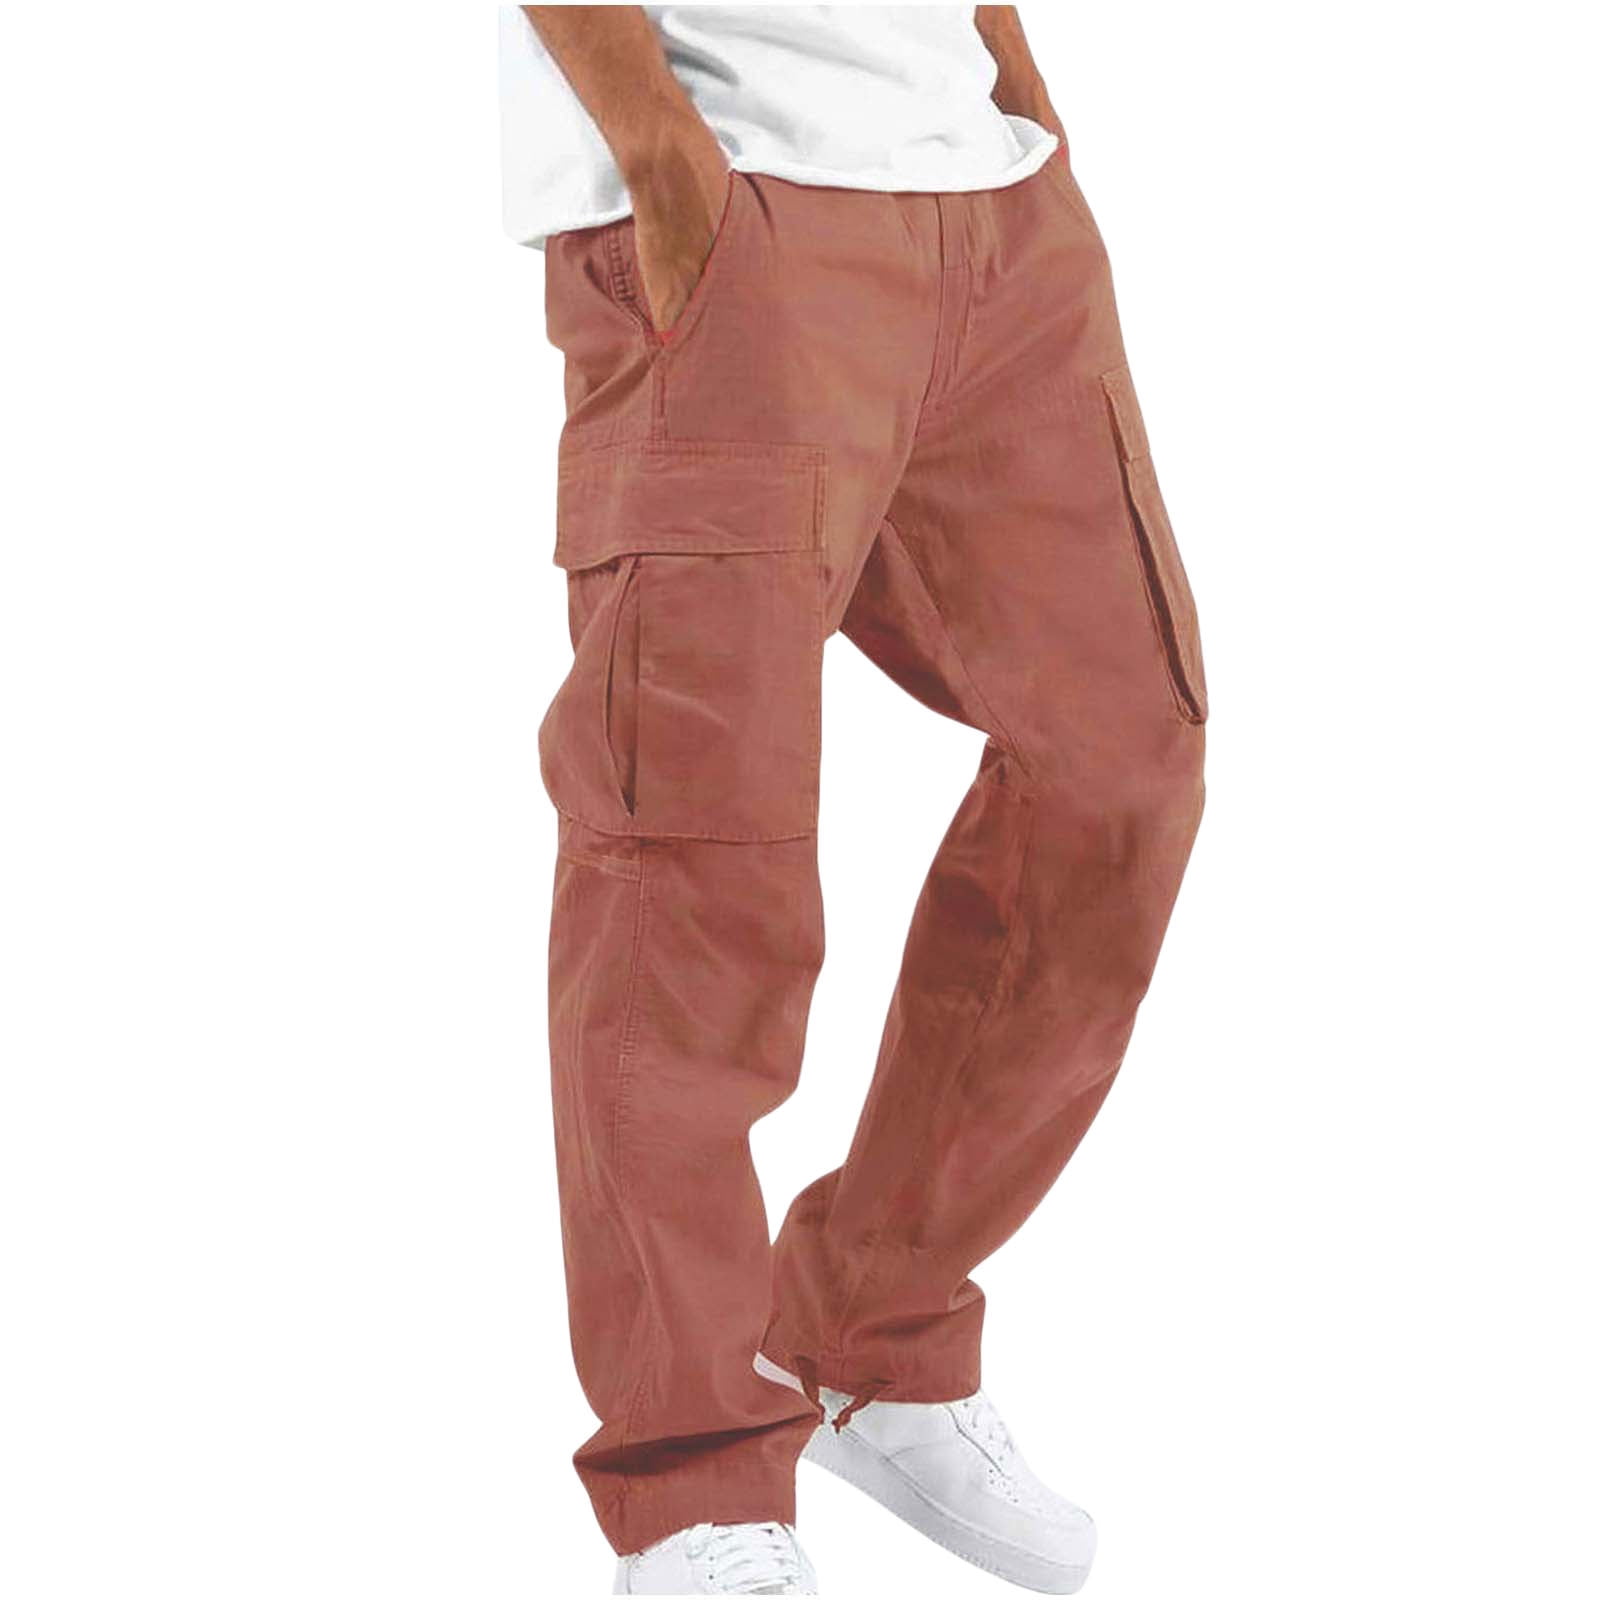 Buy Men White Print Slim Fit Casual Track Pants Online - 732350 | Van Heusen